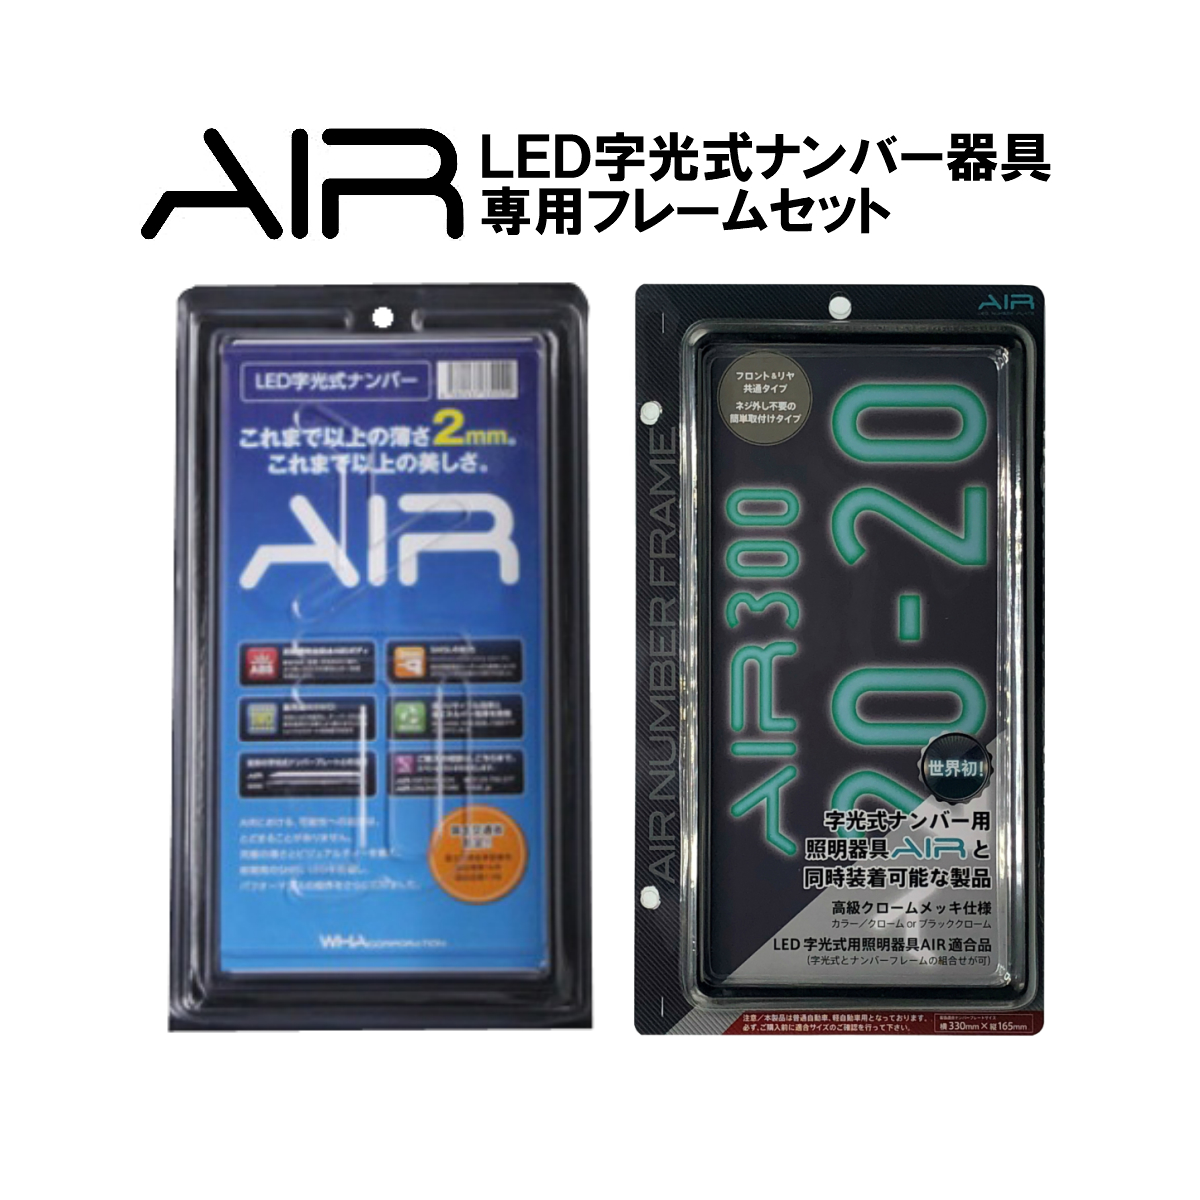 楽天市場】AIR 日本製 字光式ナンバー器具 国土交通省認可 LED 字光式 